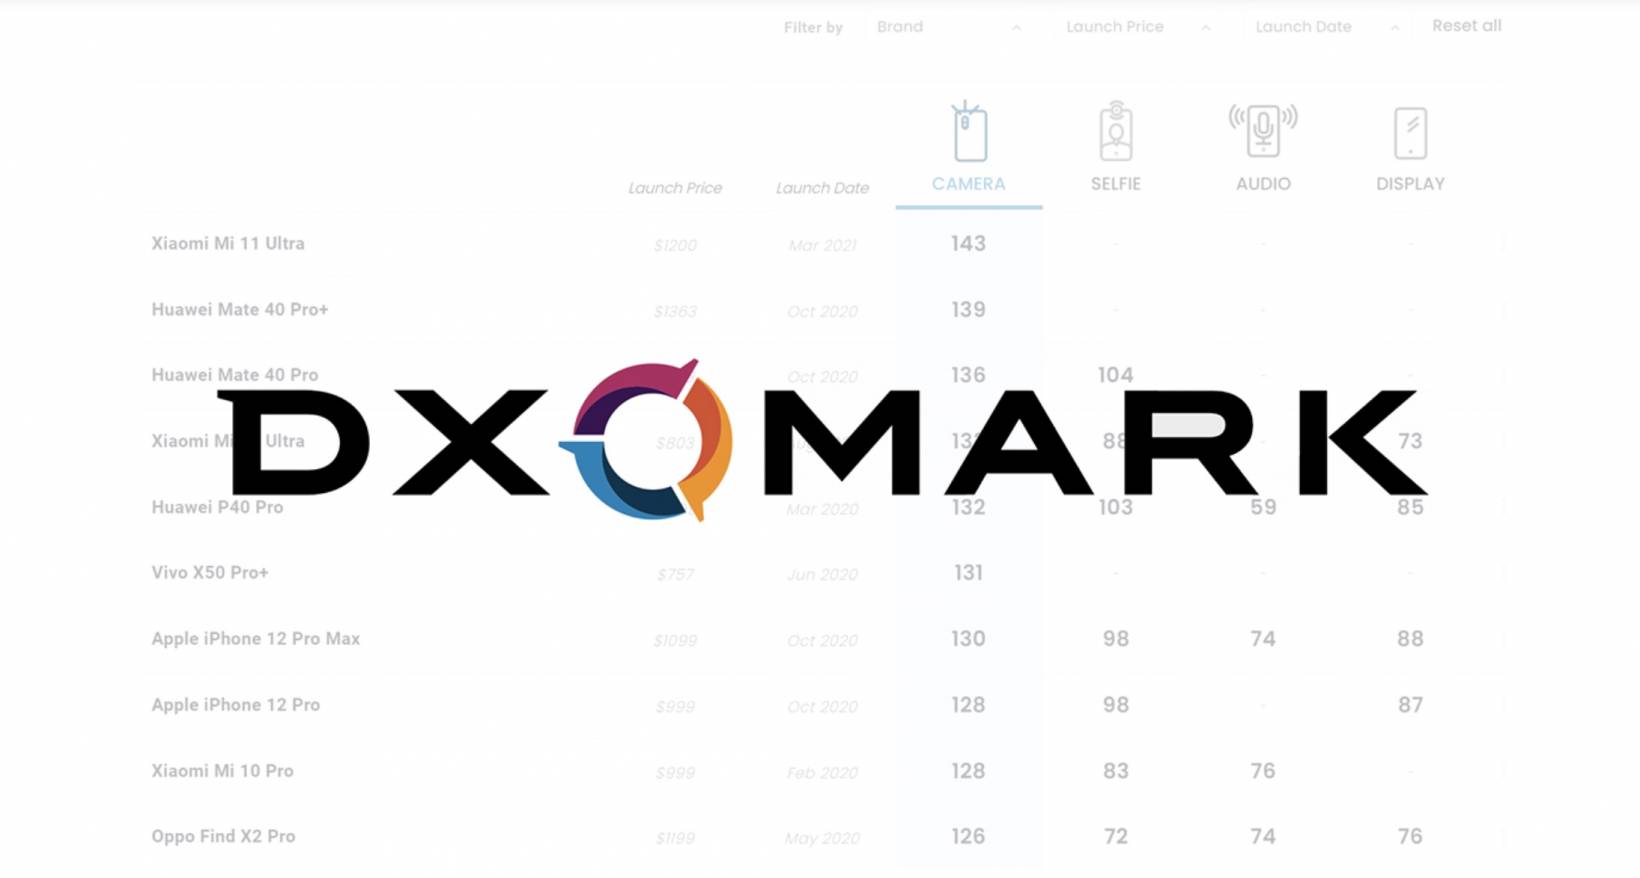 DXOMARK fügt Preissegmentierung in Benchmark-Rankings hinzu 104